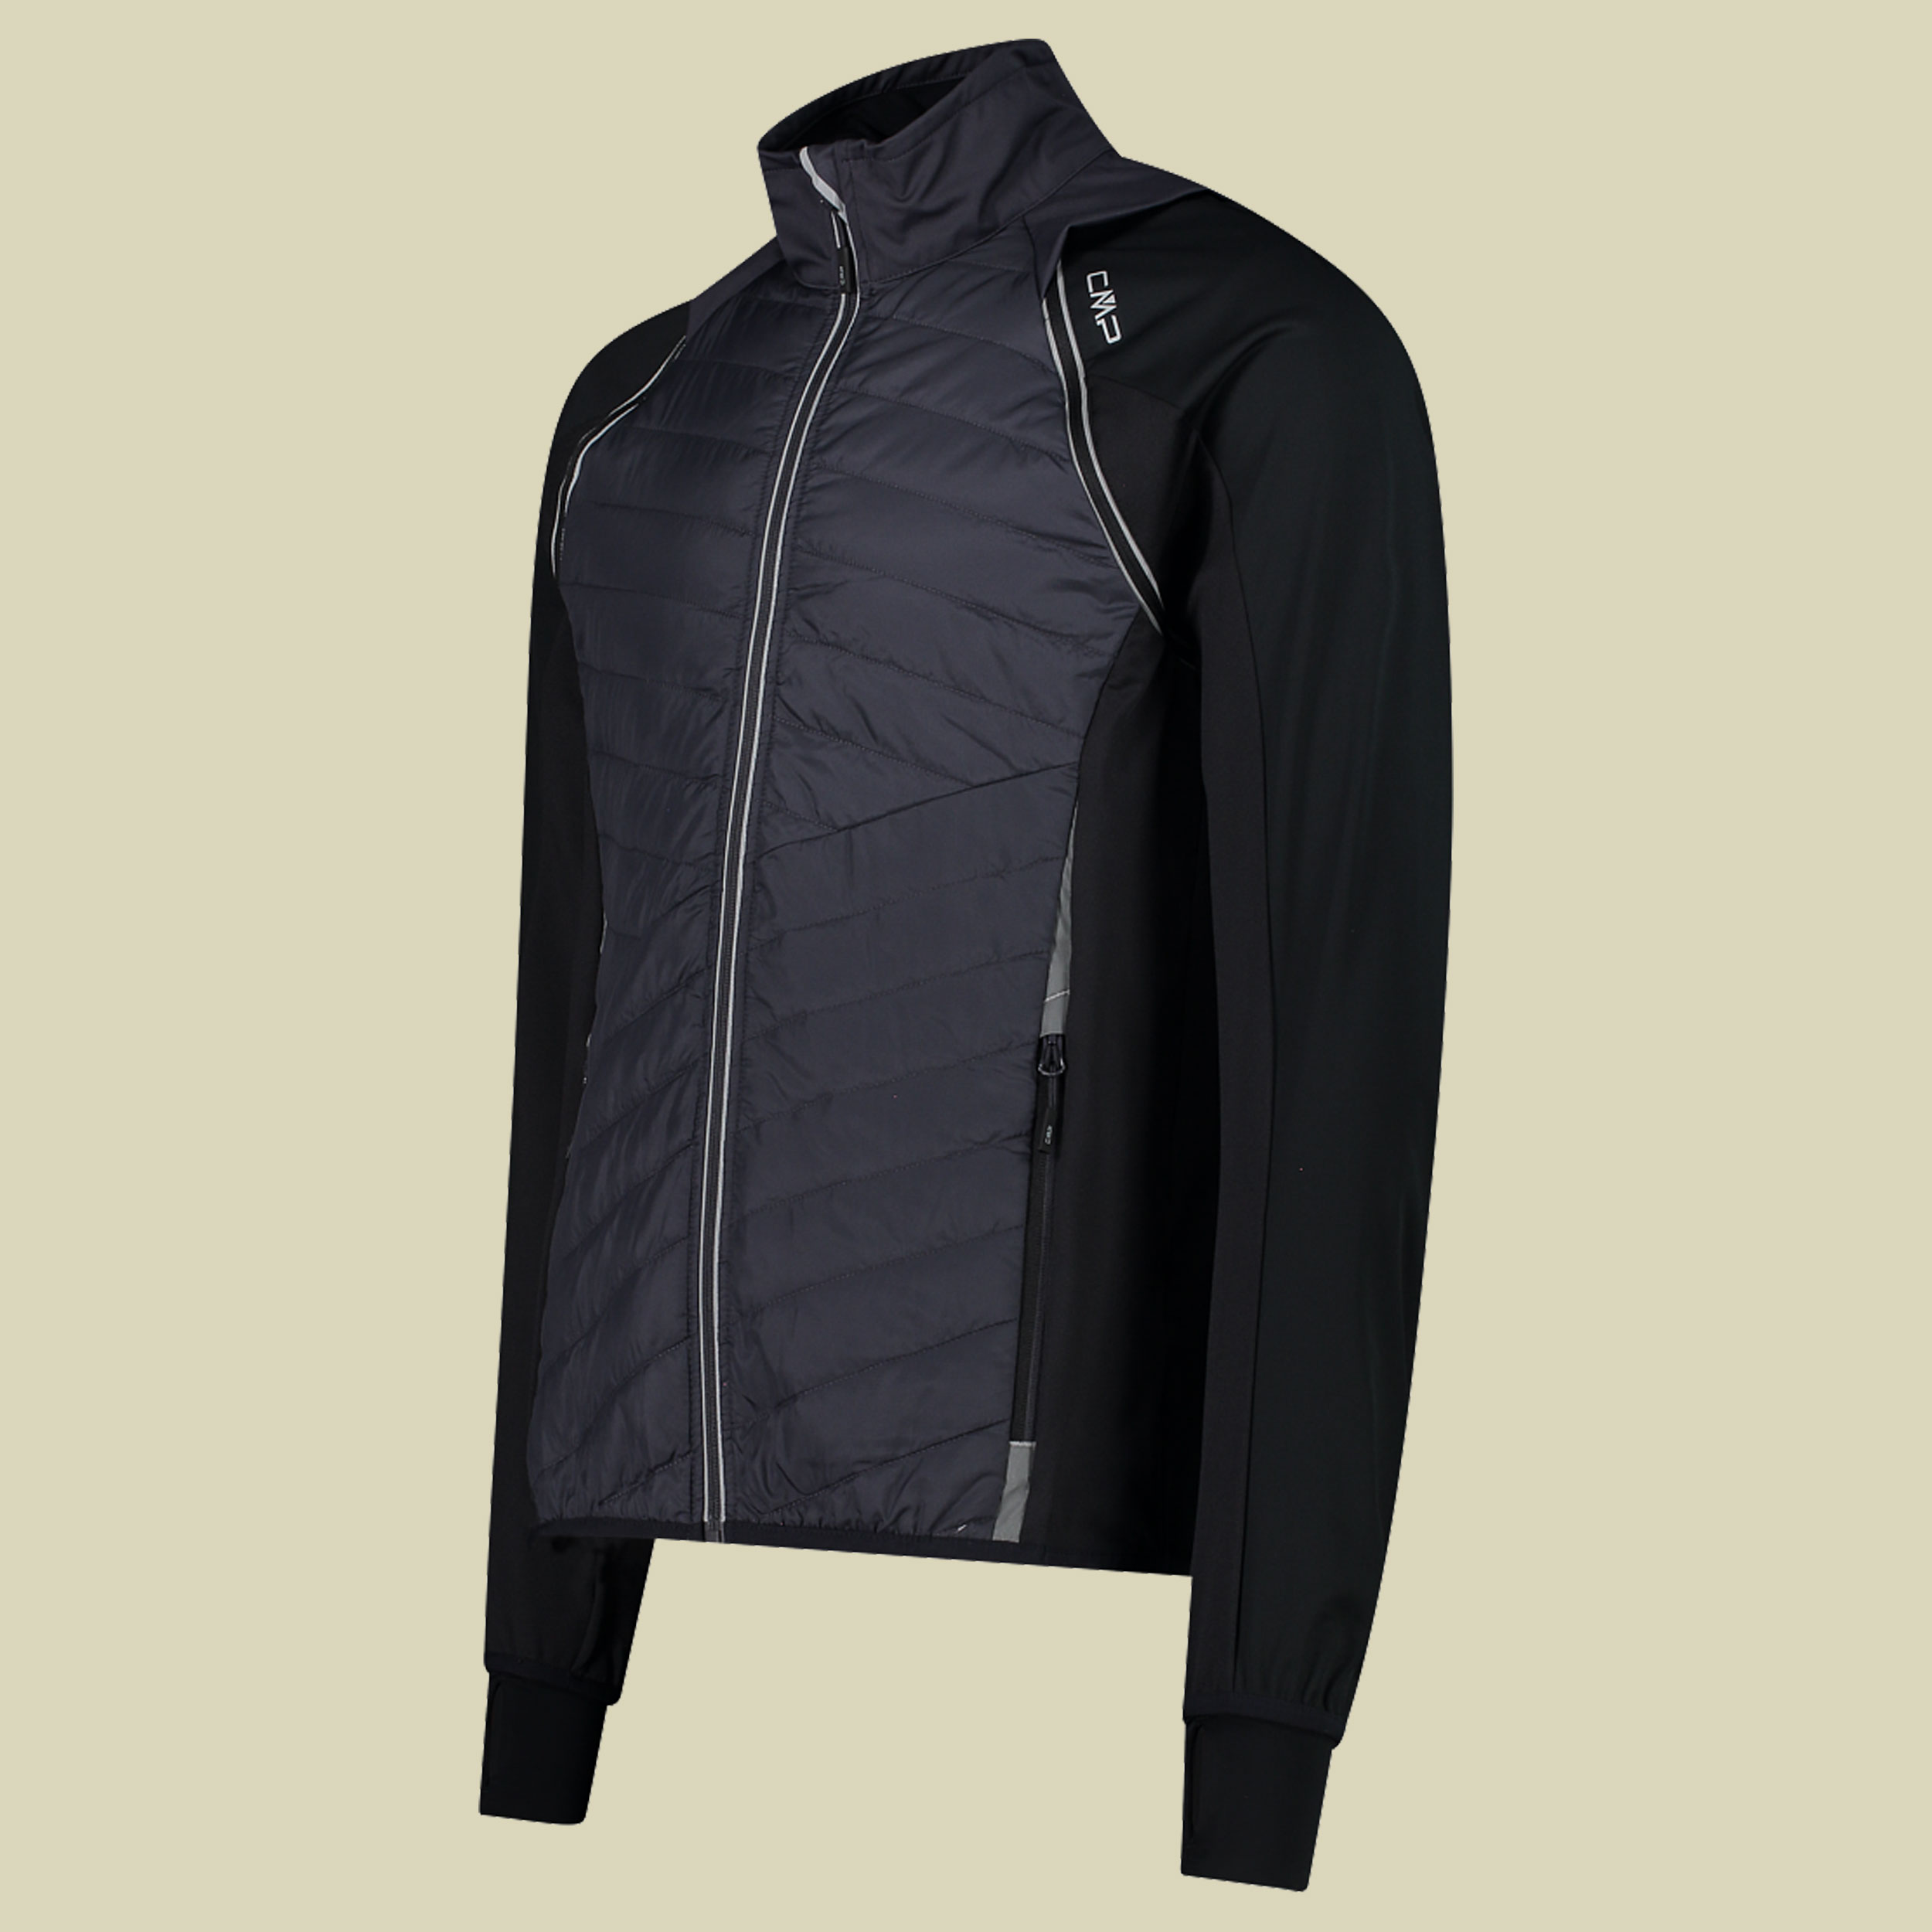 Man Jacket detachable Sleeves 30A2647 Größe 48 Farbe U423 antracite